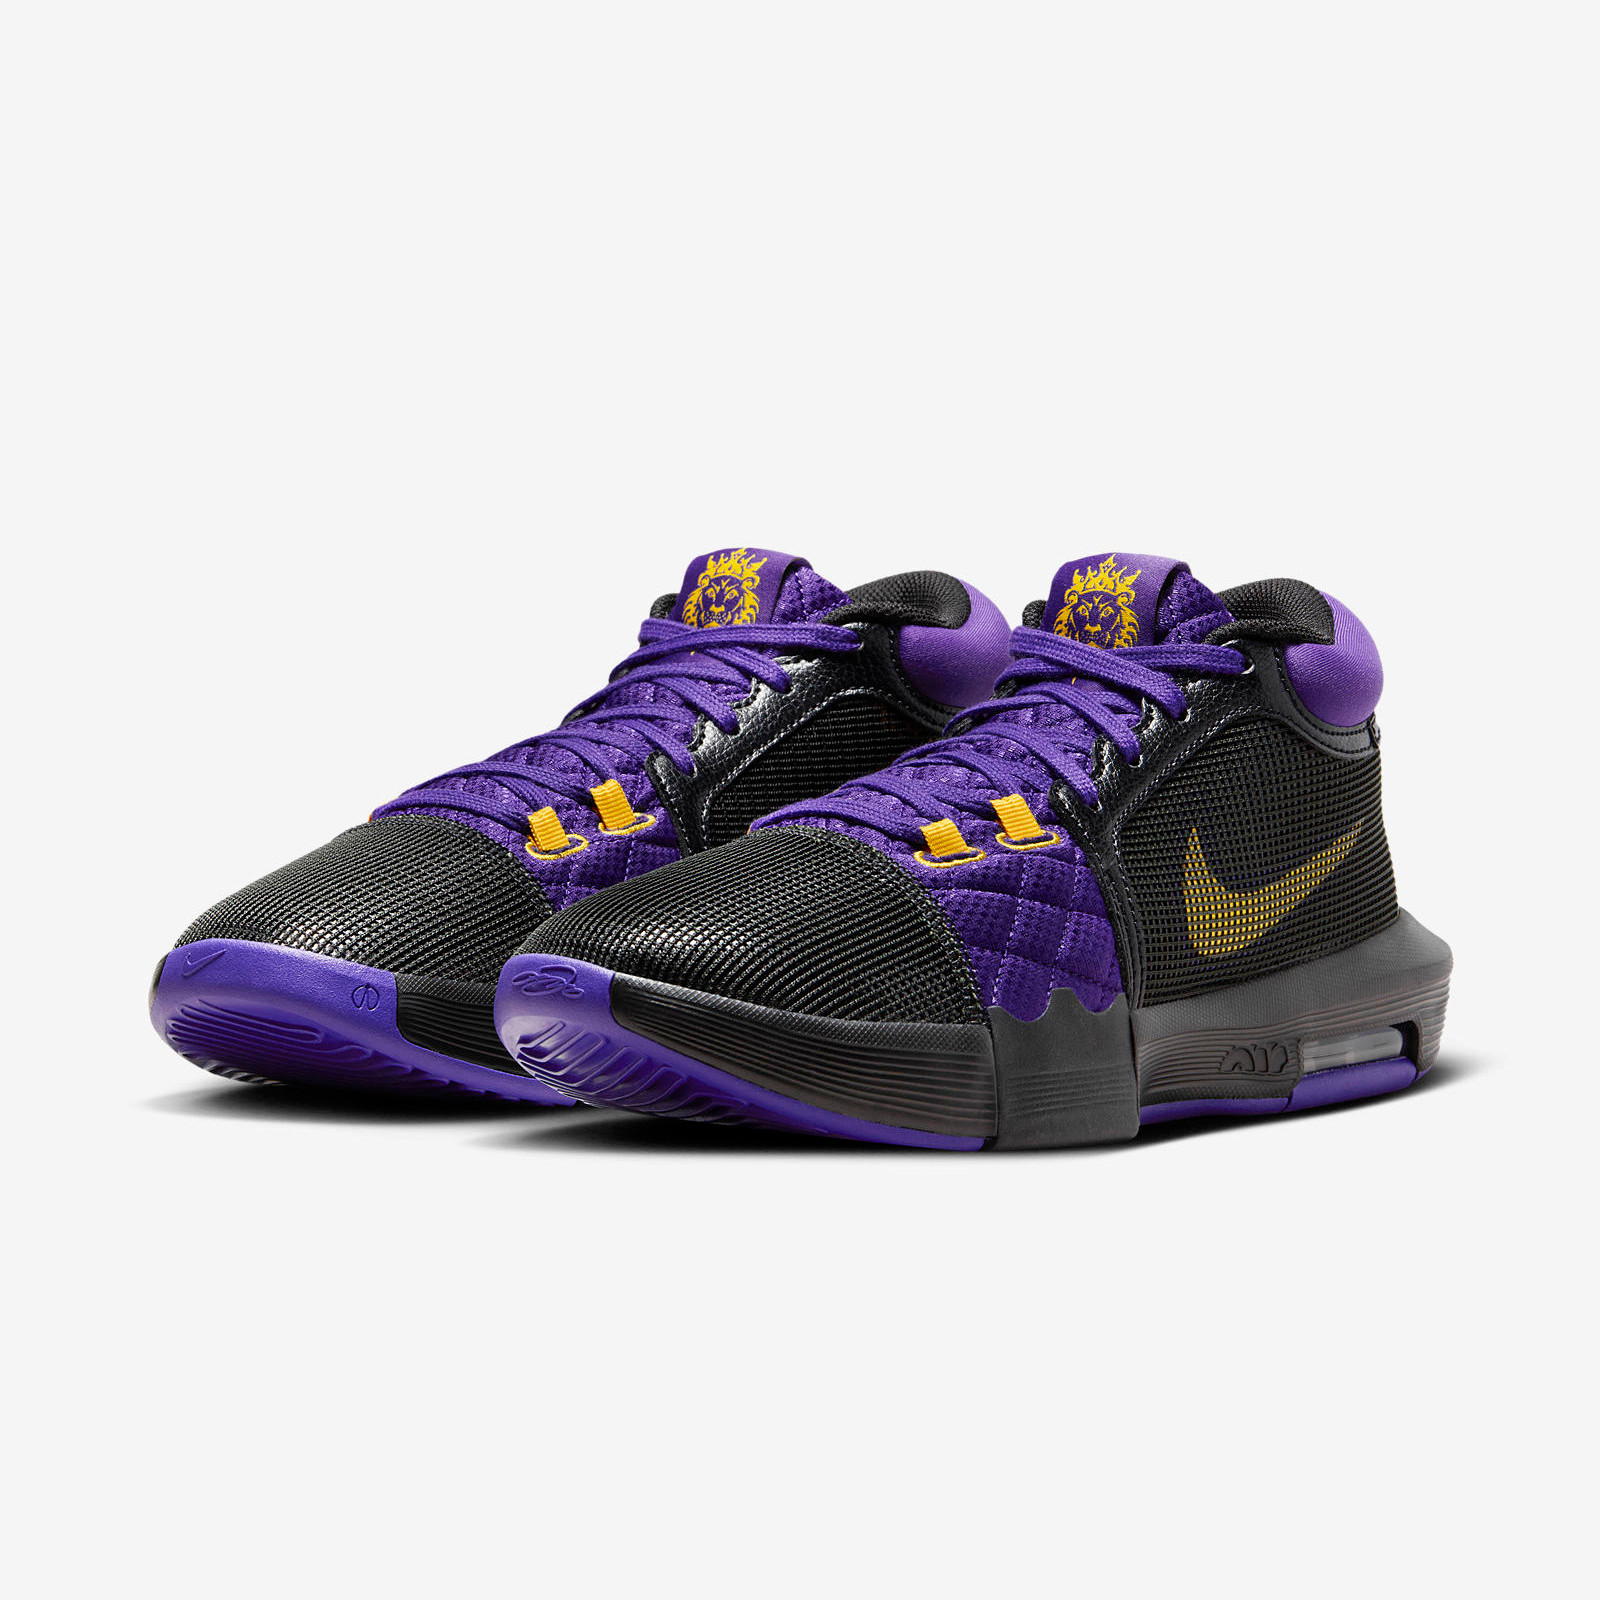 Nike LeBron Witness 8
« Fiery Purple »